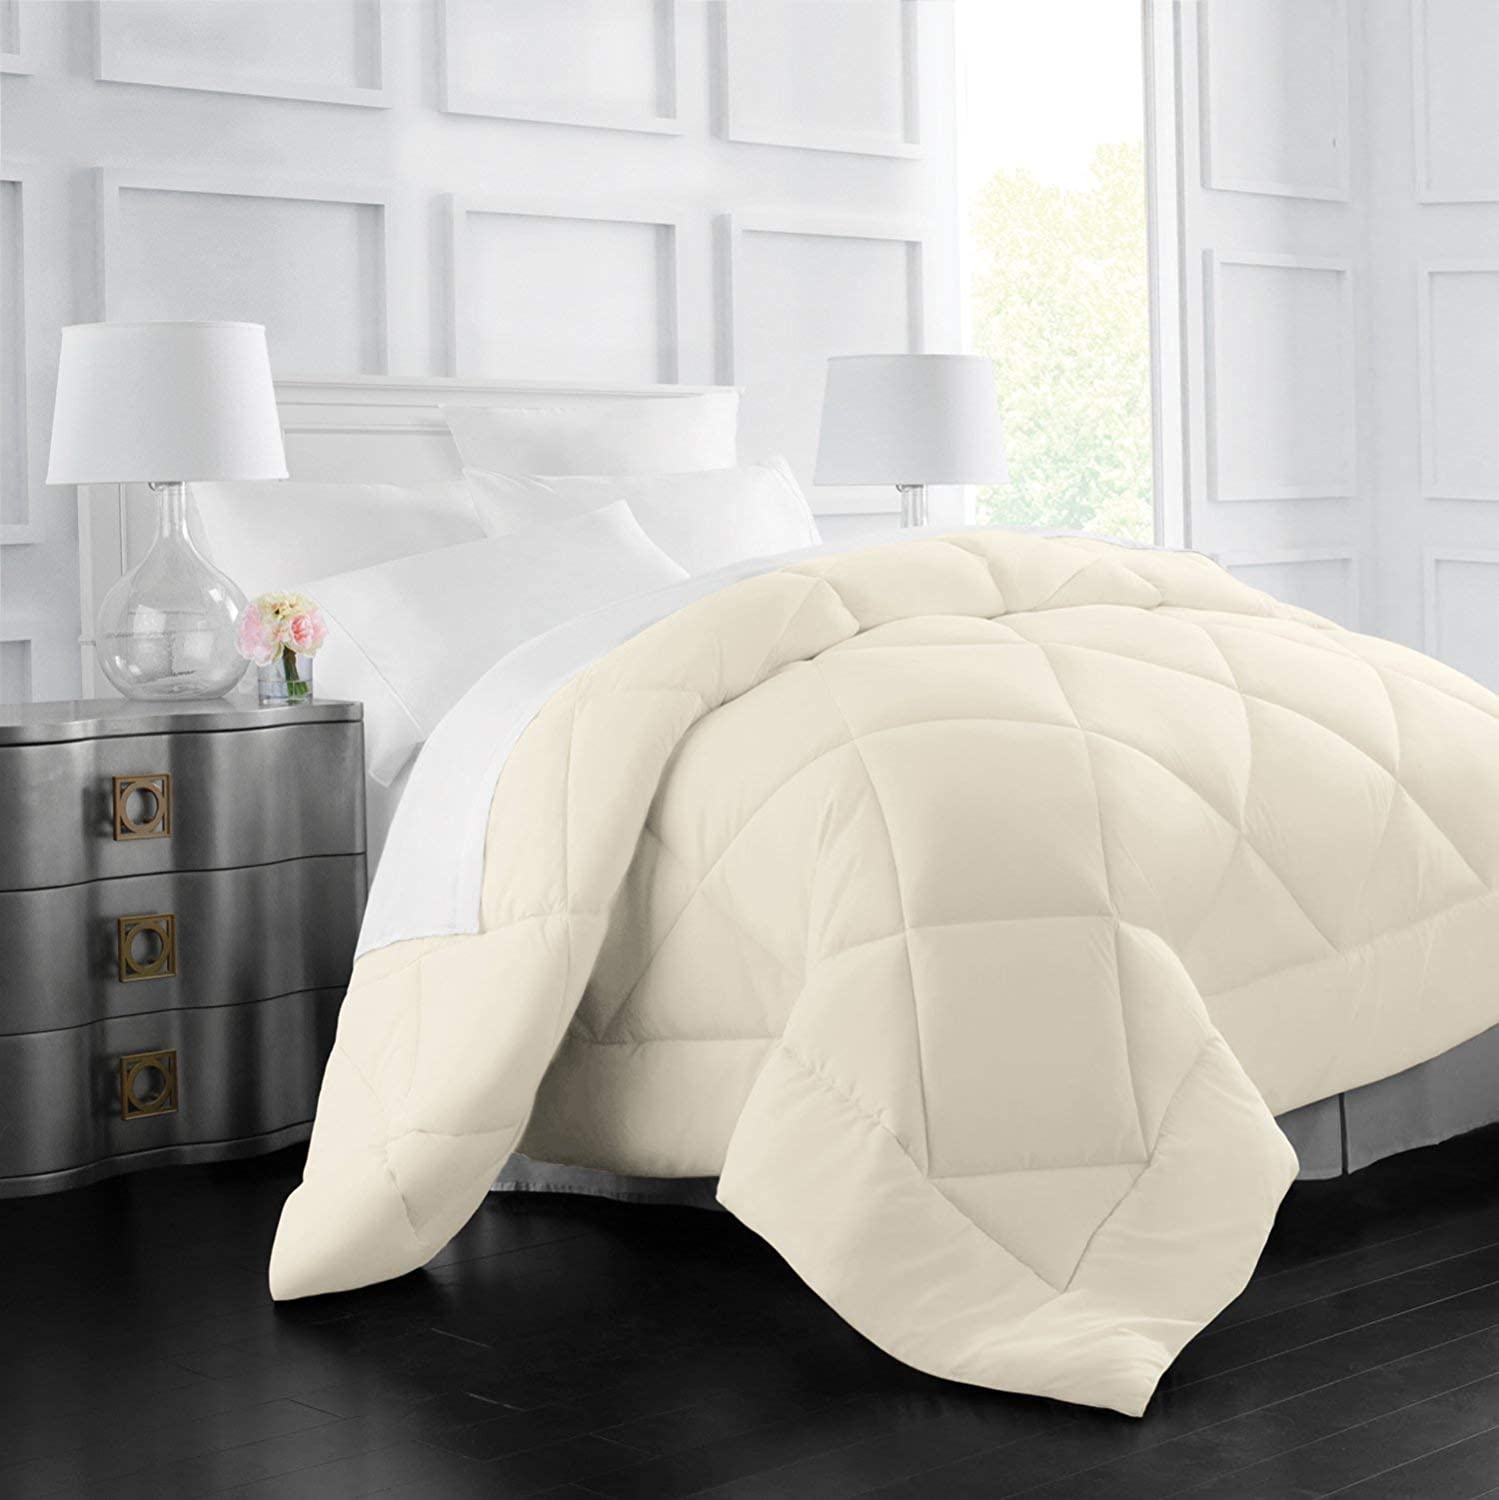 Top 10 Best Twin Xl Comforter - Fluffy & Lightweight - MattressDX.com